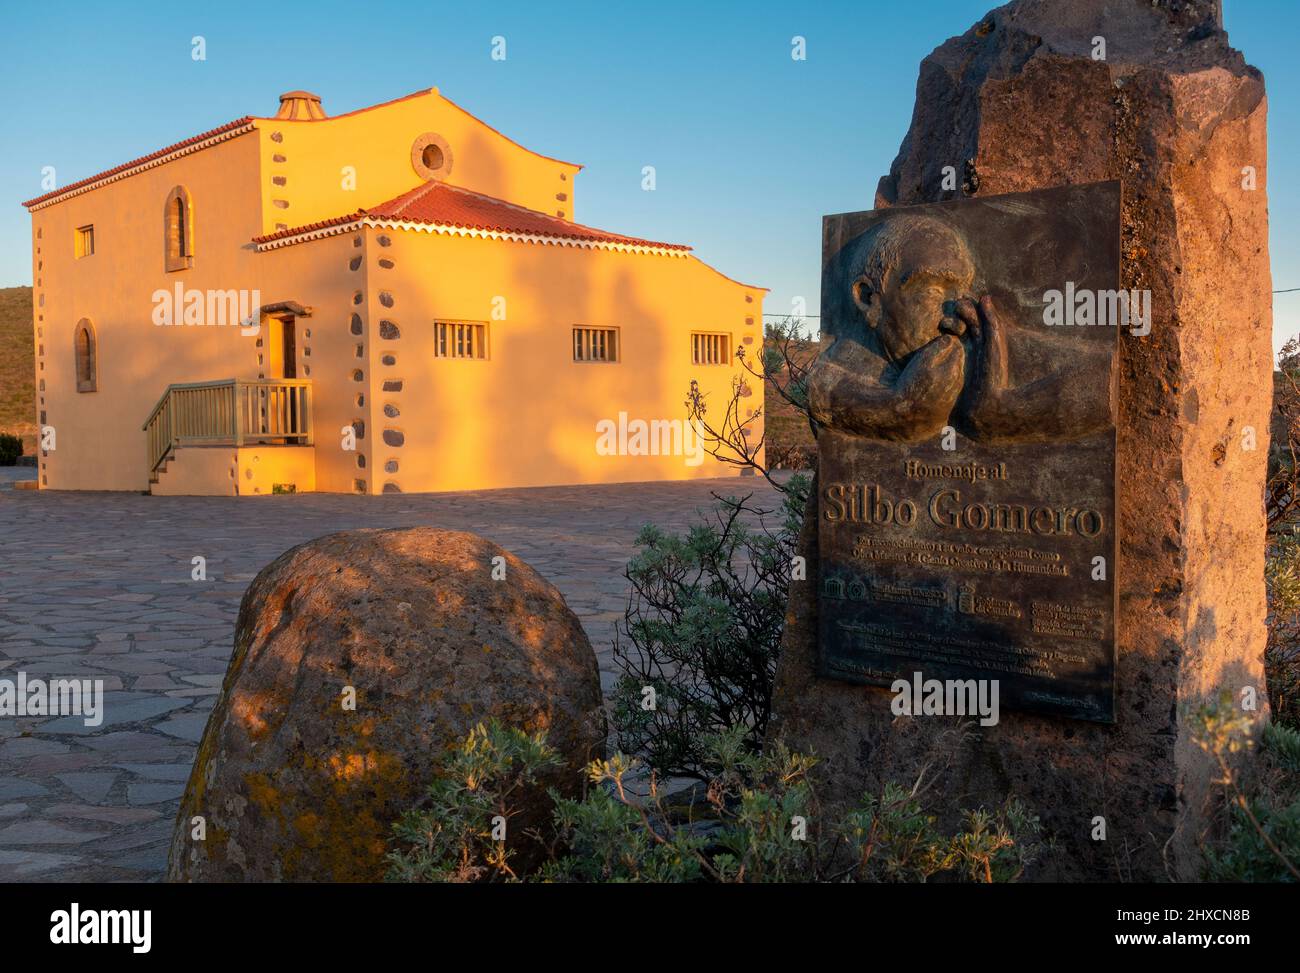 The Silbo Gomero Monument - The Monument to the La Gomera Whistle, located on the Mirador de Igualero, La Gomera, Canary Islands, Spain Stock Photo